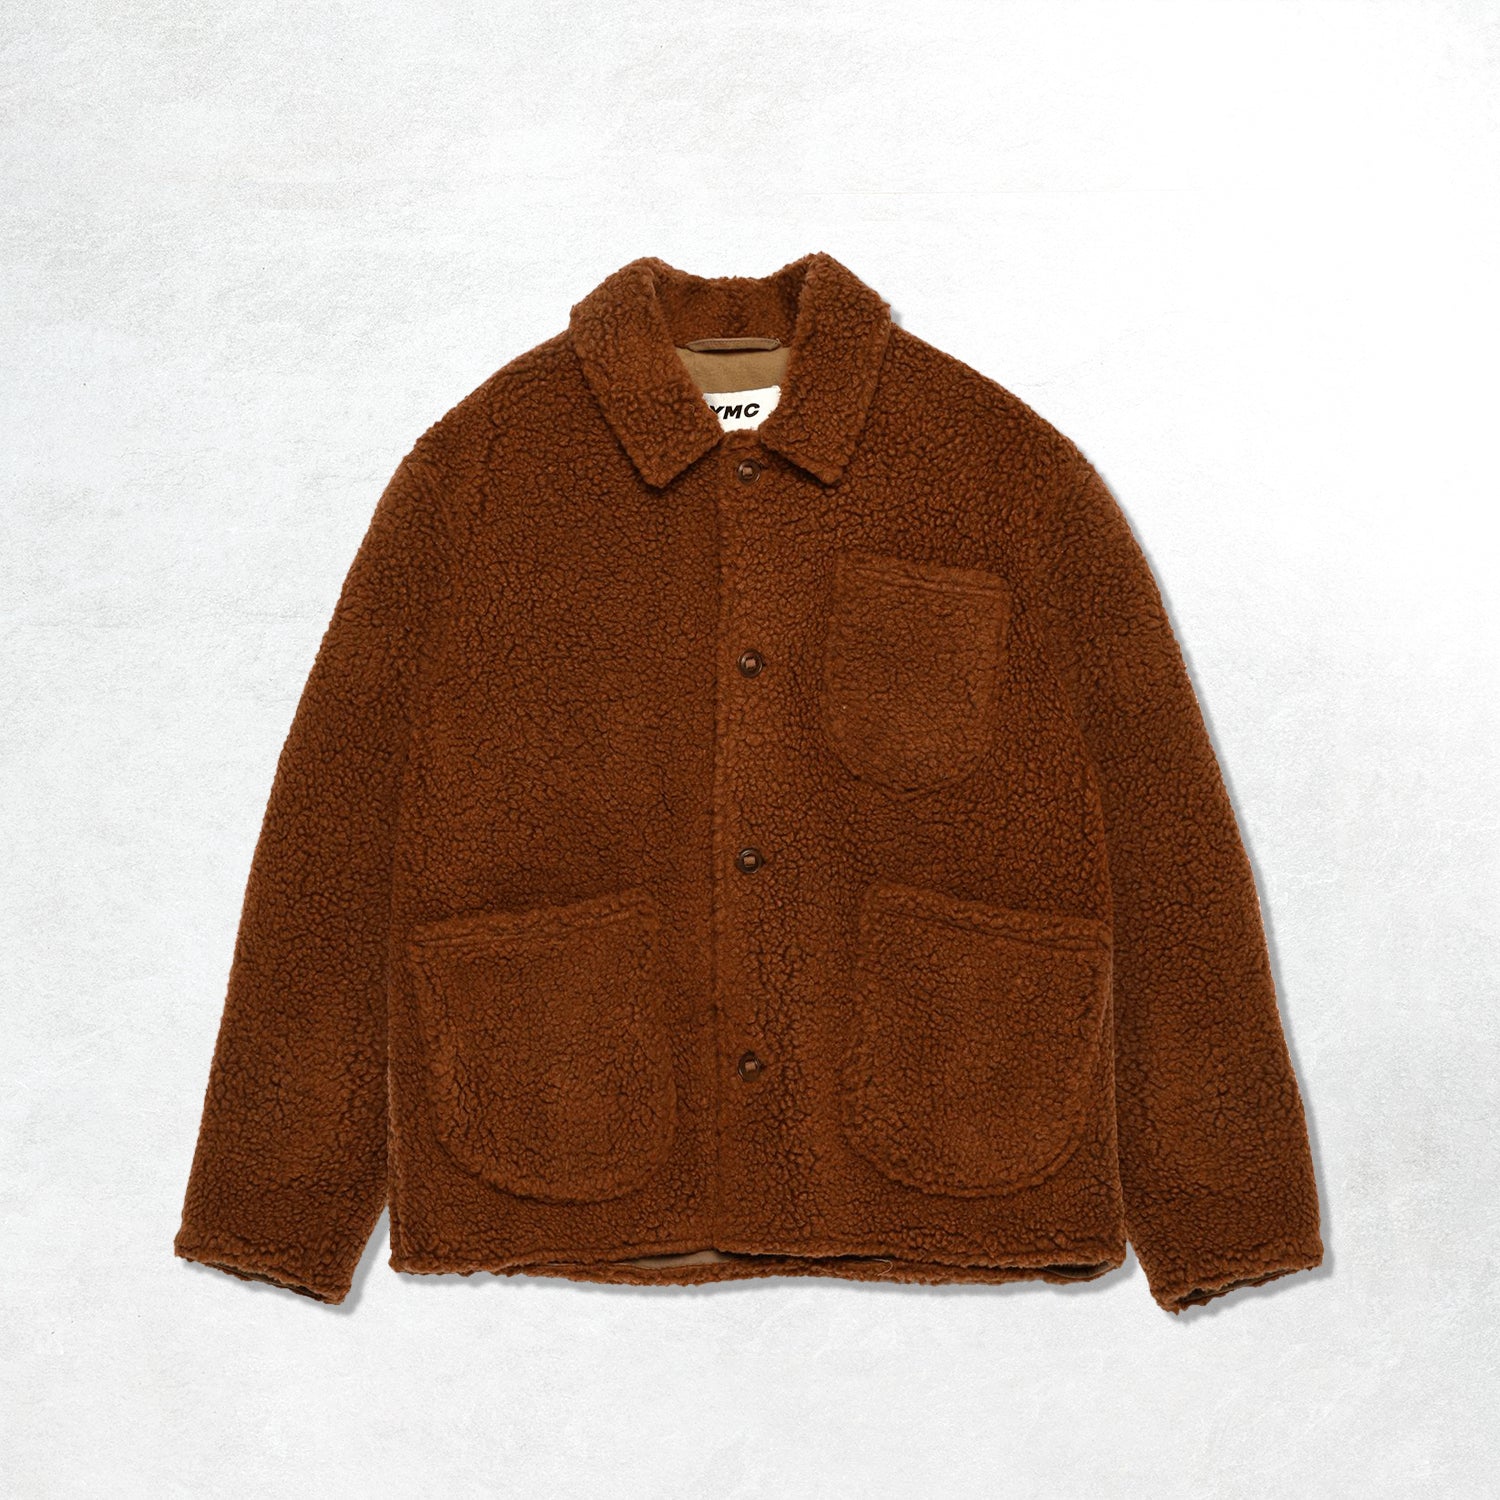 YMC Labour Chore Jacket: Rust (Front)